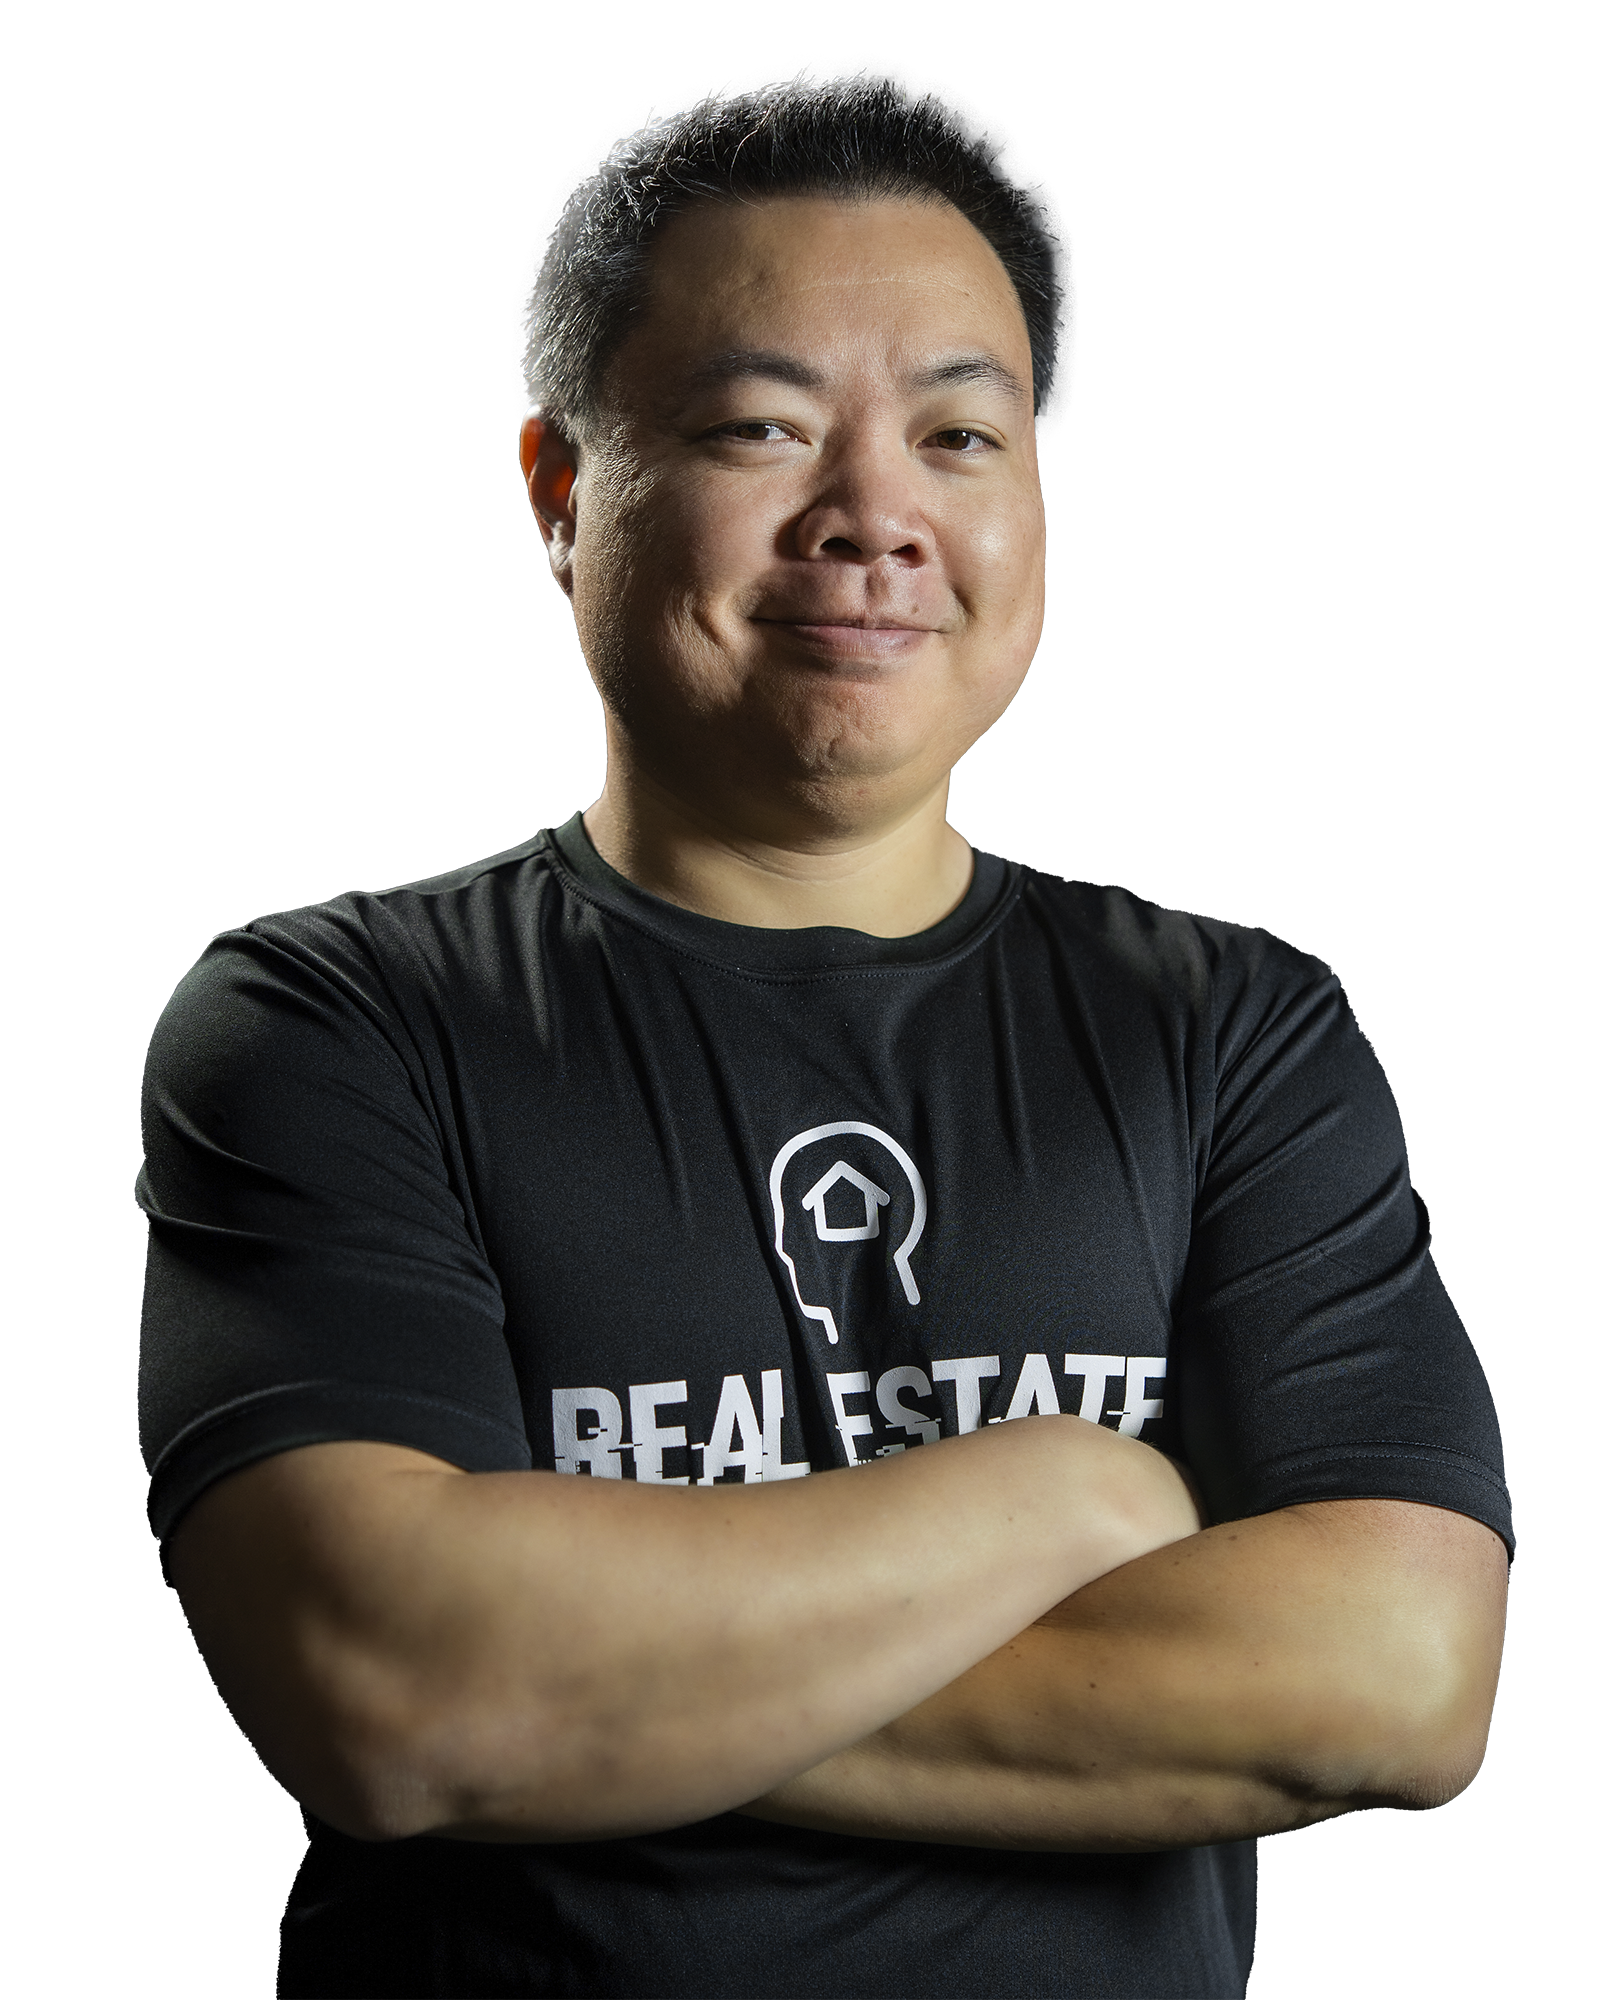 Steve Trang – Disruptors Sales Training